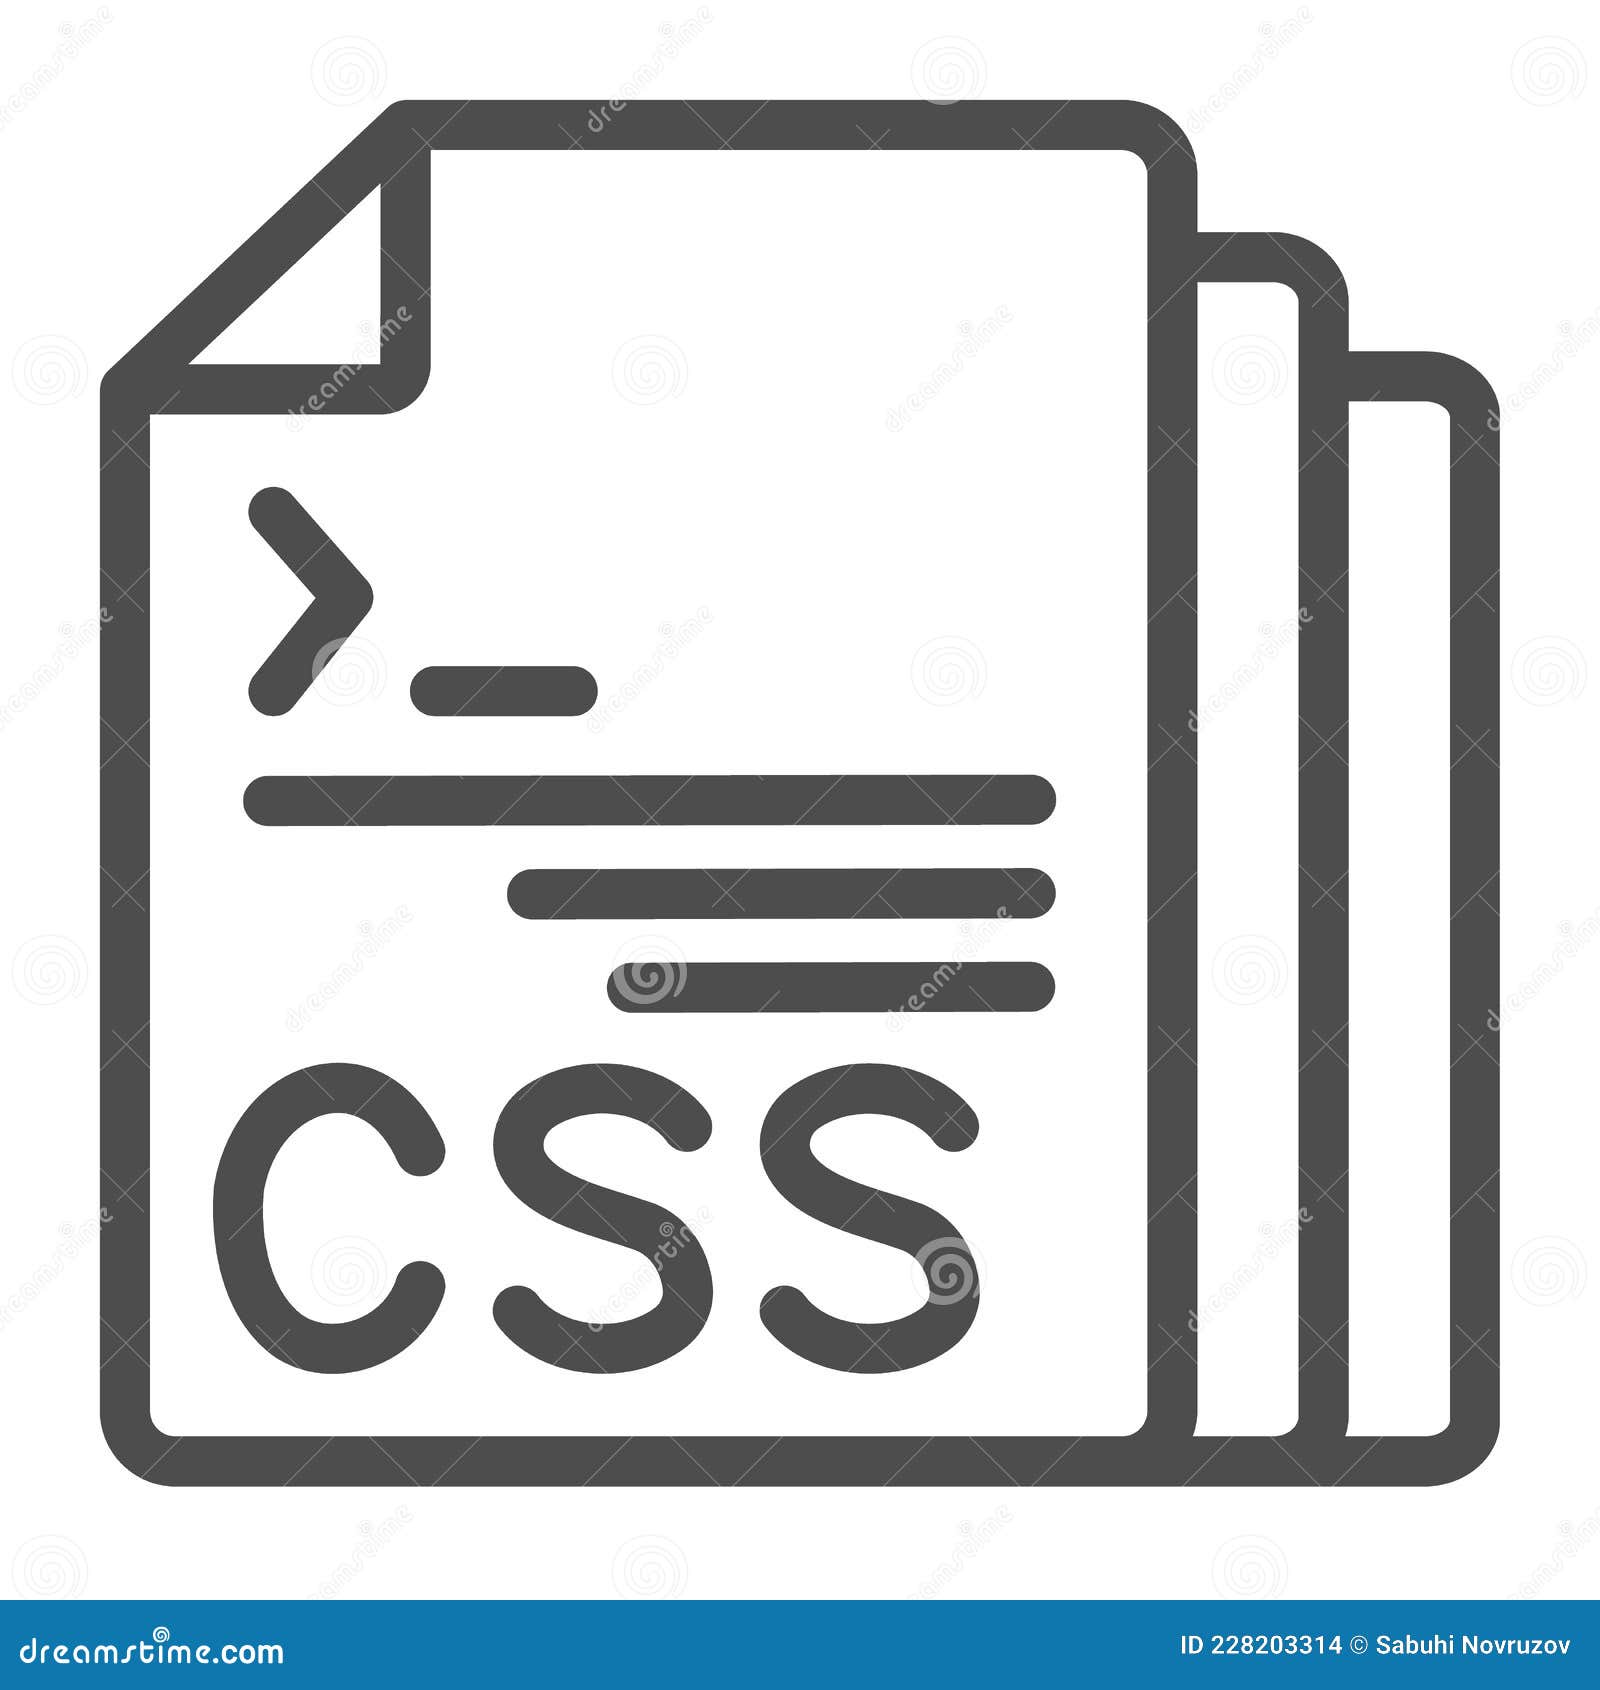 Nếu bạn là một nhà phát triển web và đang tìm kiếm các tài liệu CSS để cải thiện trình độ chuyên môn của mình, hãy xem ngay ảnh liên quan đến từ khoá này. Tài liệu CSS chi tiết và dễ hiểu này sẽ giúp bạn nâng cao kĩ năng và đạt được thành công trong công việc của mình.